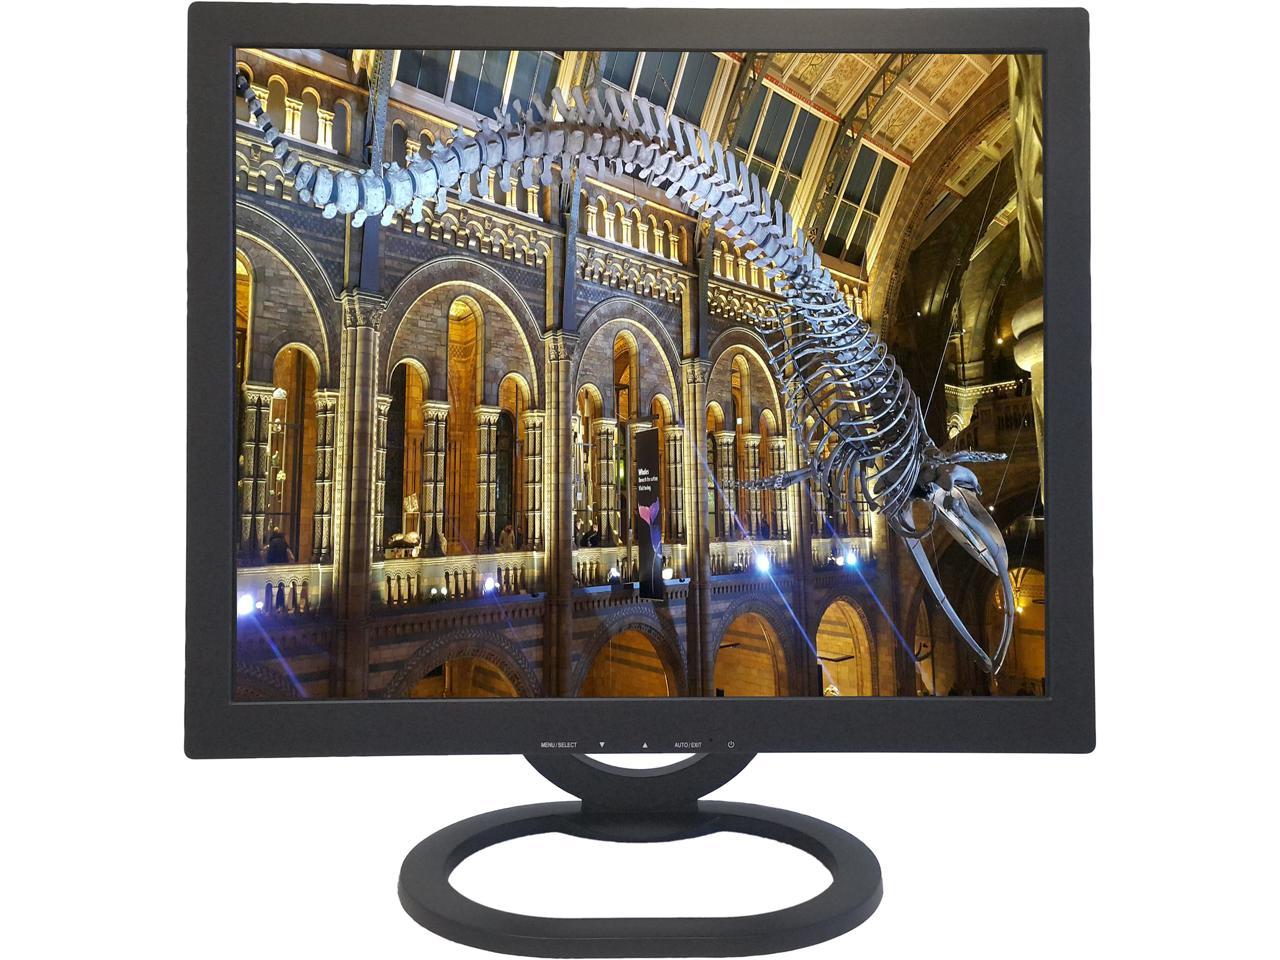 ViewEra 19" Active Matrix, TFT LCD SXGA LCD Monitor 5ms (Typ.) 1280 x 1024 D-Sub, BNC V191BN2 - image 1 of 7